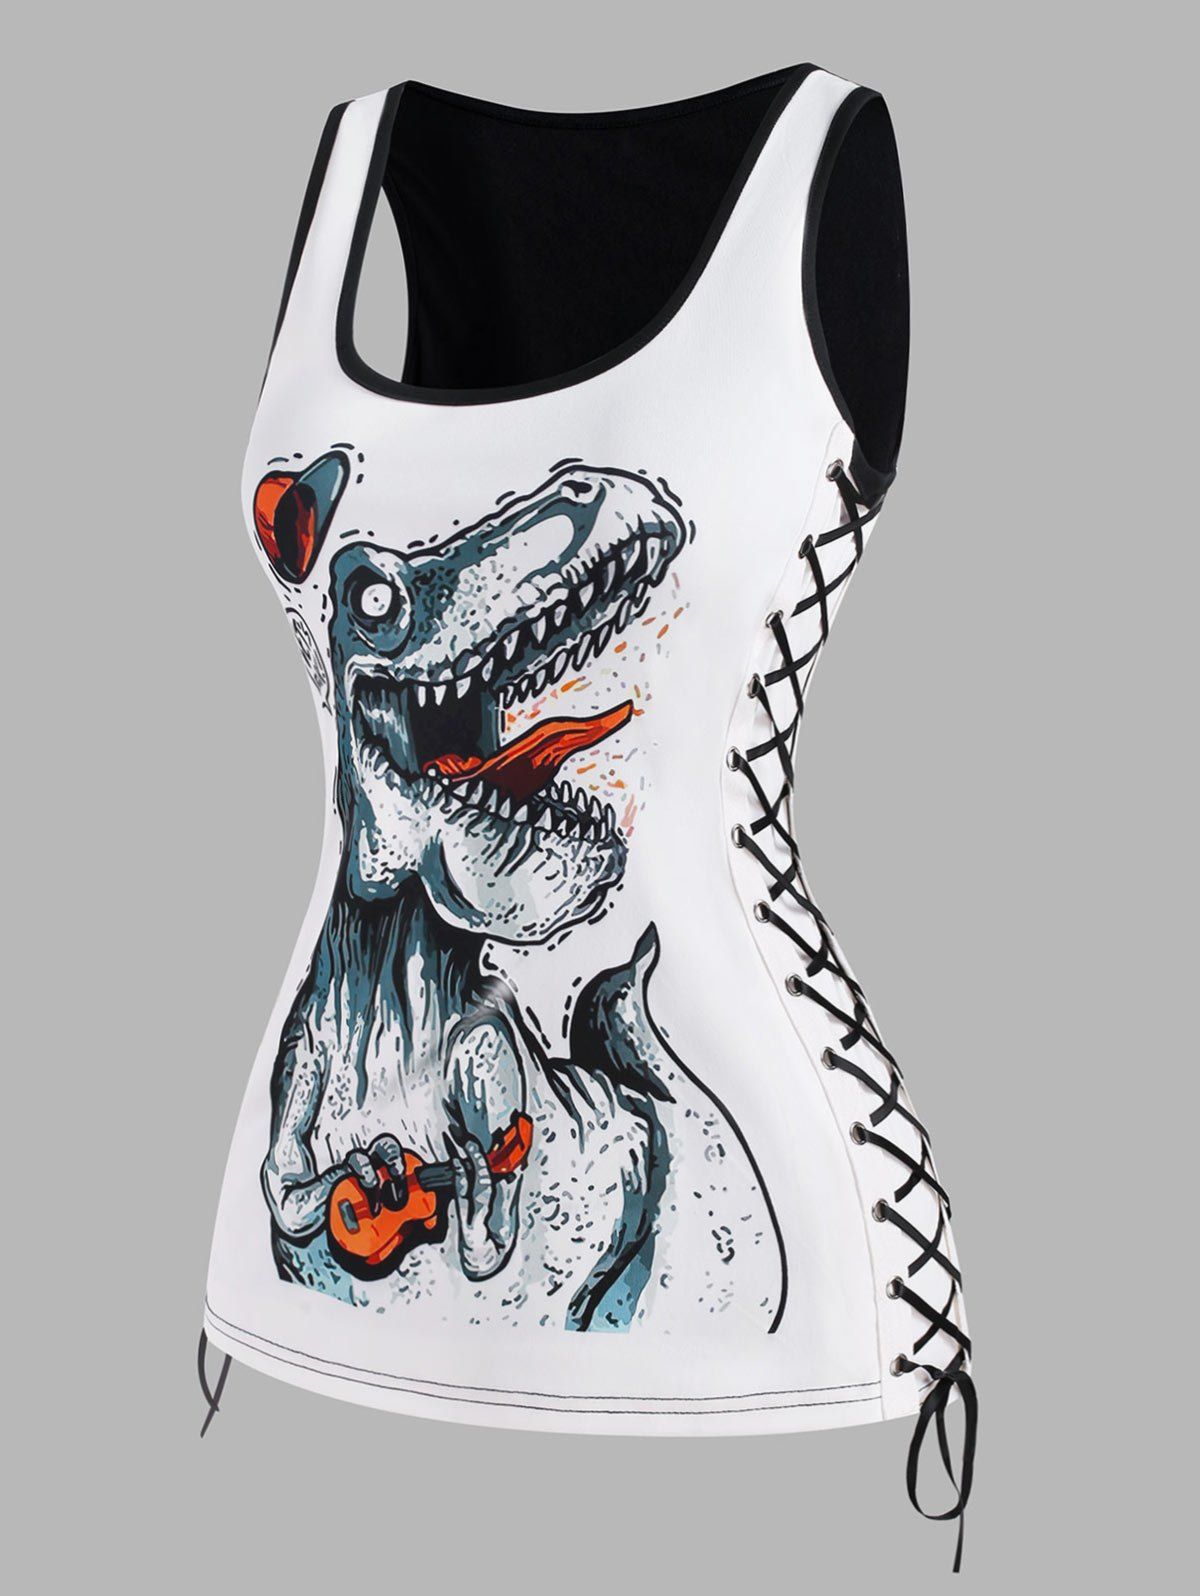 Dinosaur Dragon Print Lace Up Tank Top - WHITE XL